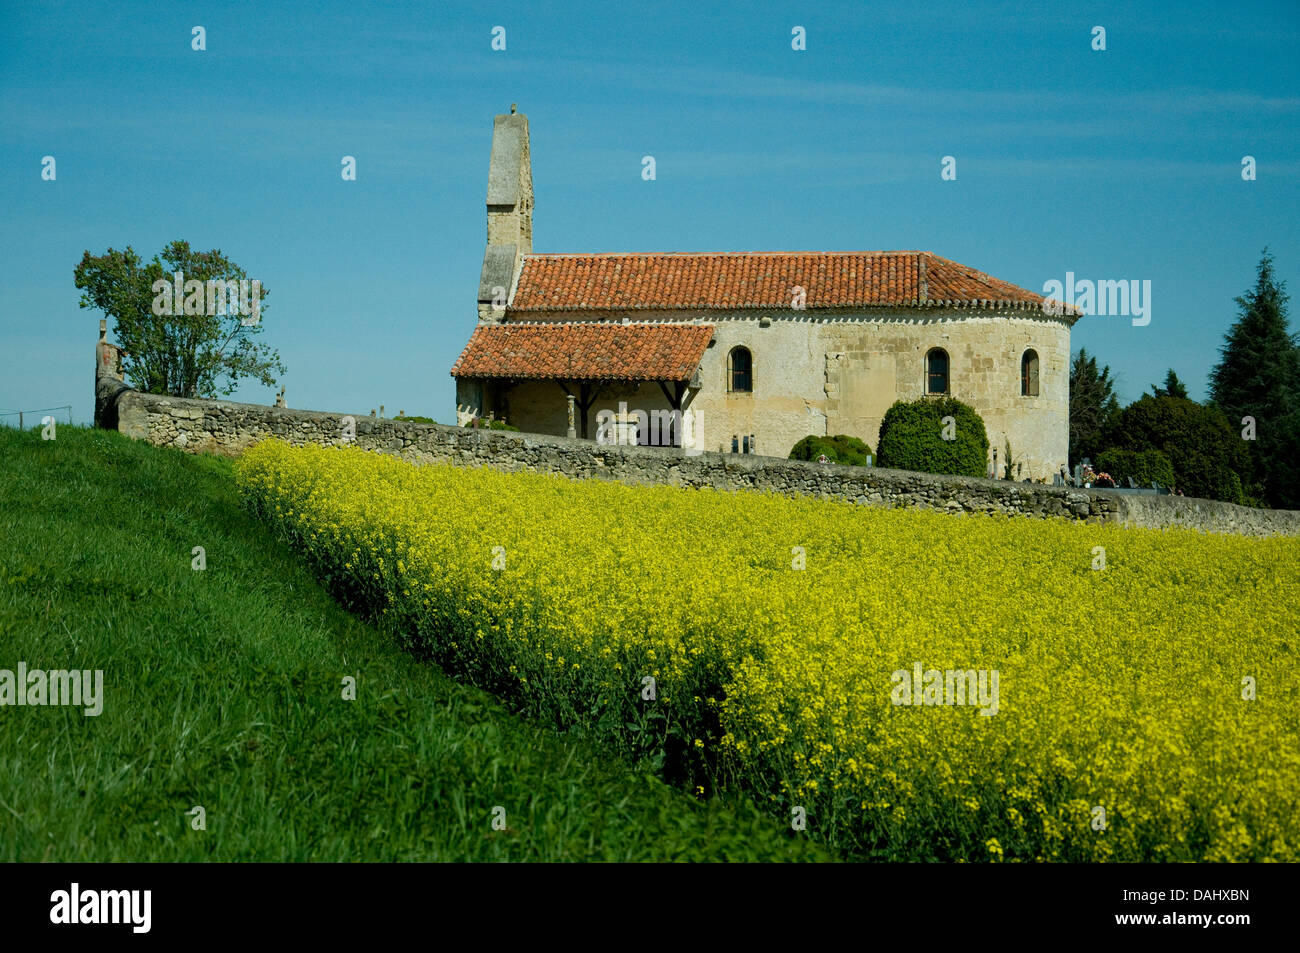 Eine kleine Landkirche im Südwesten Frankreich sich im Frühjahr durch ein Feld von hellen gelben Raps Blumen schmückt - Raps Stockfoto